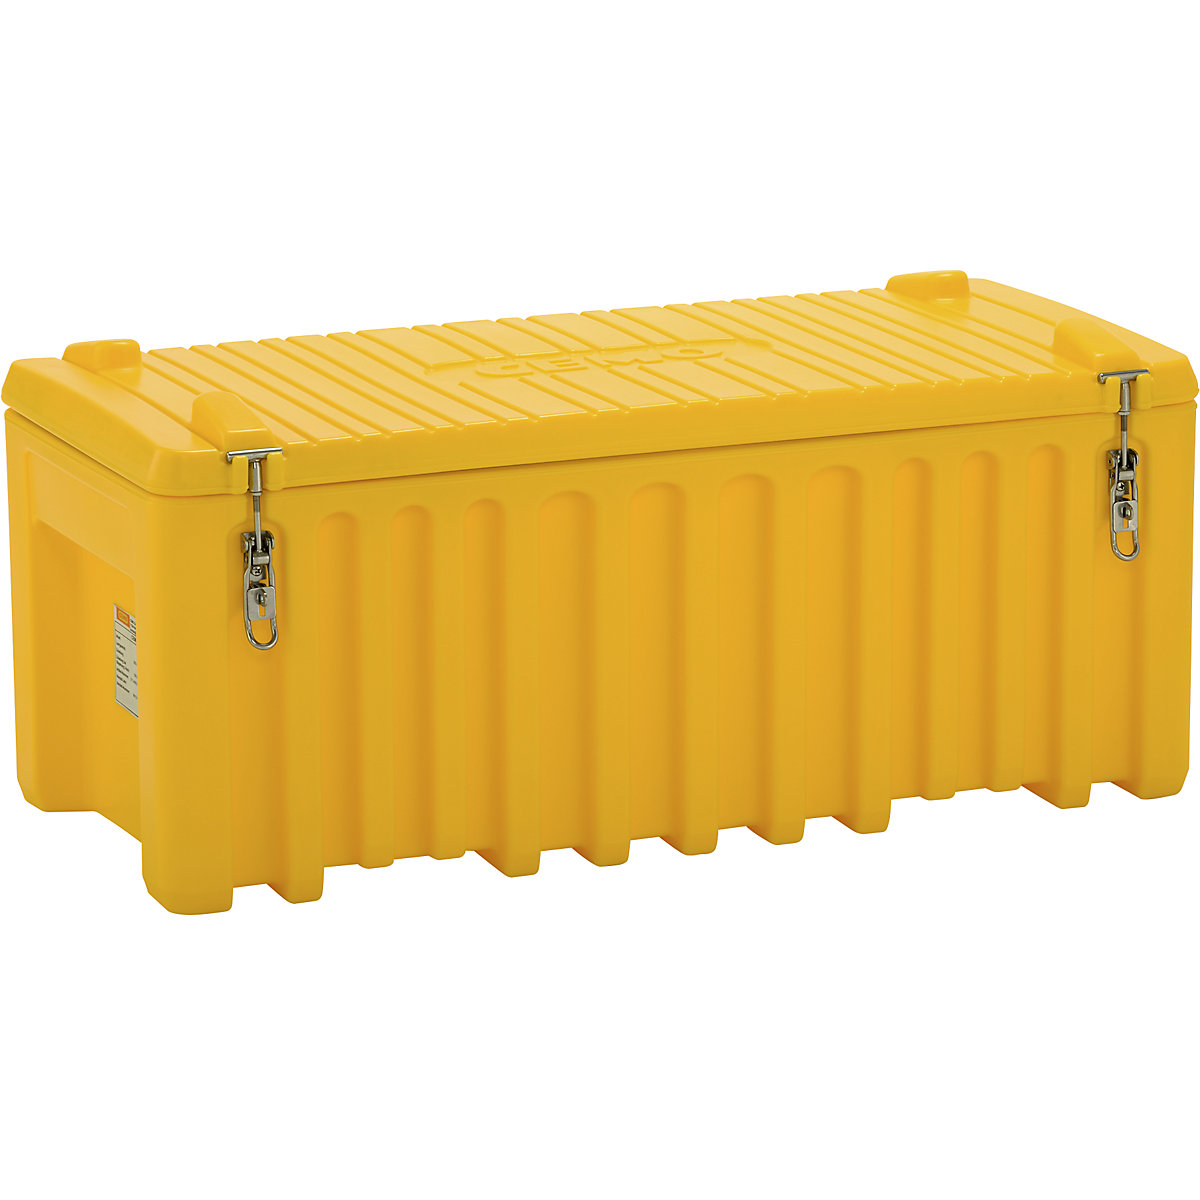 CEMO Universalbox aus Polyethylen, Inhalt 250 l, Traglast 200 kg, gelb